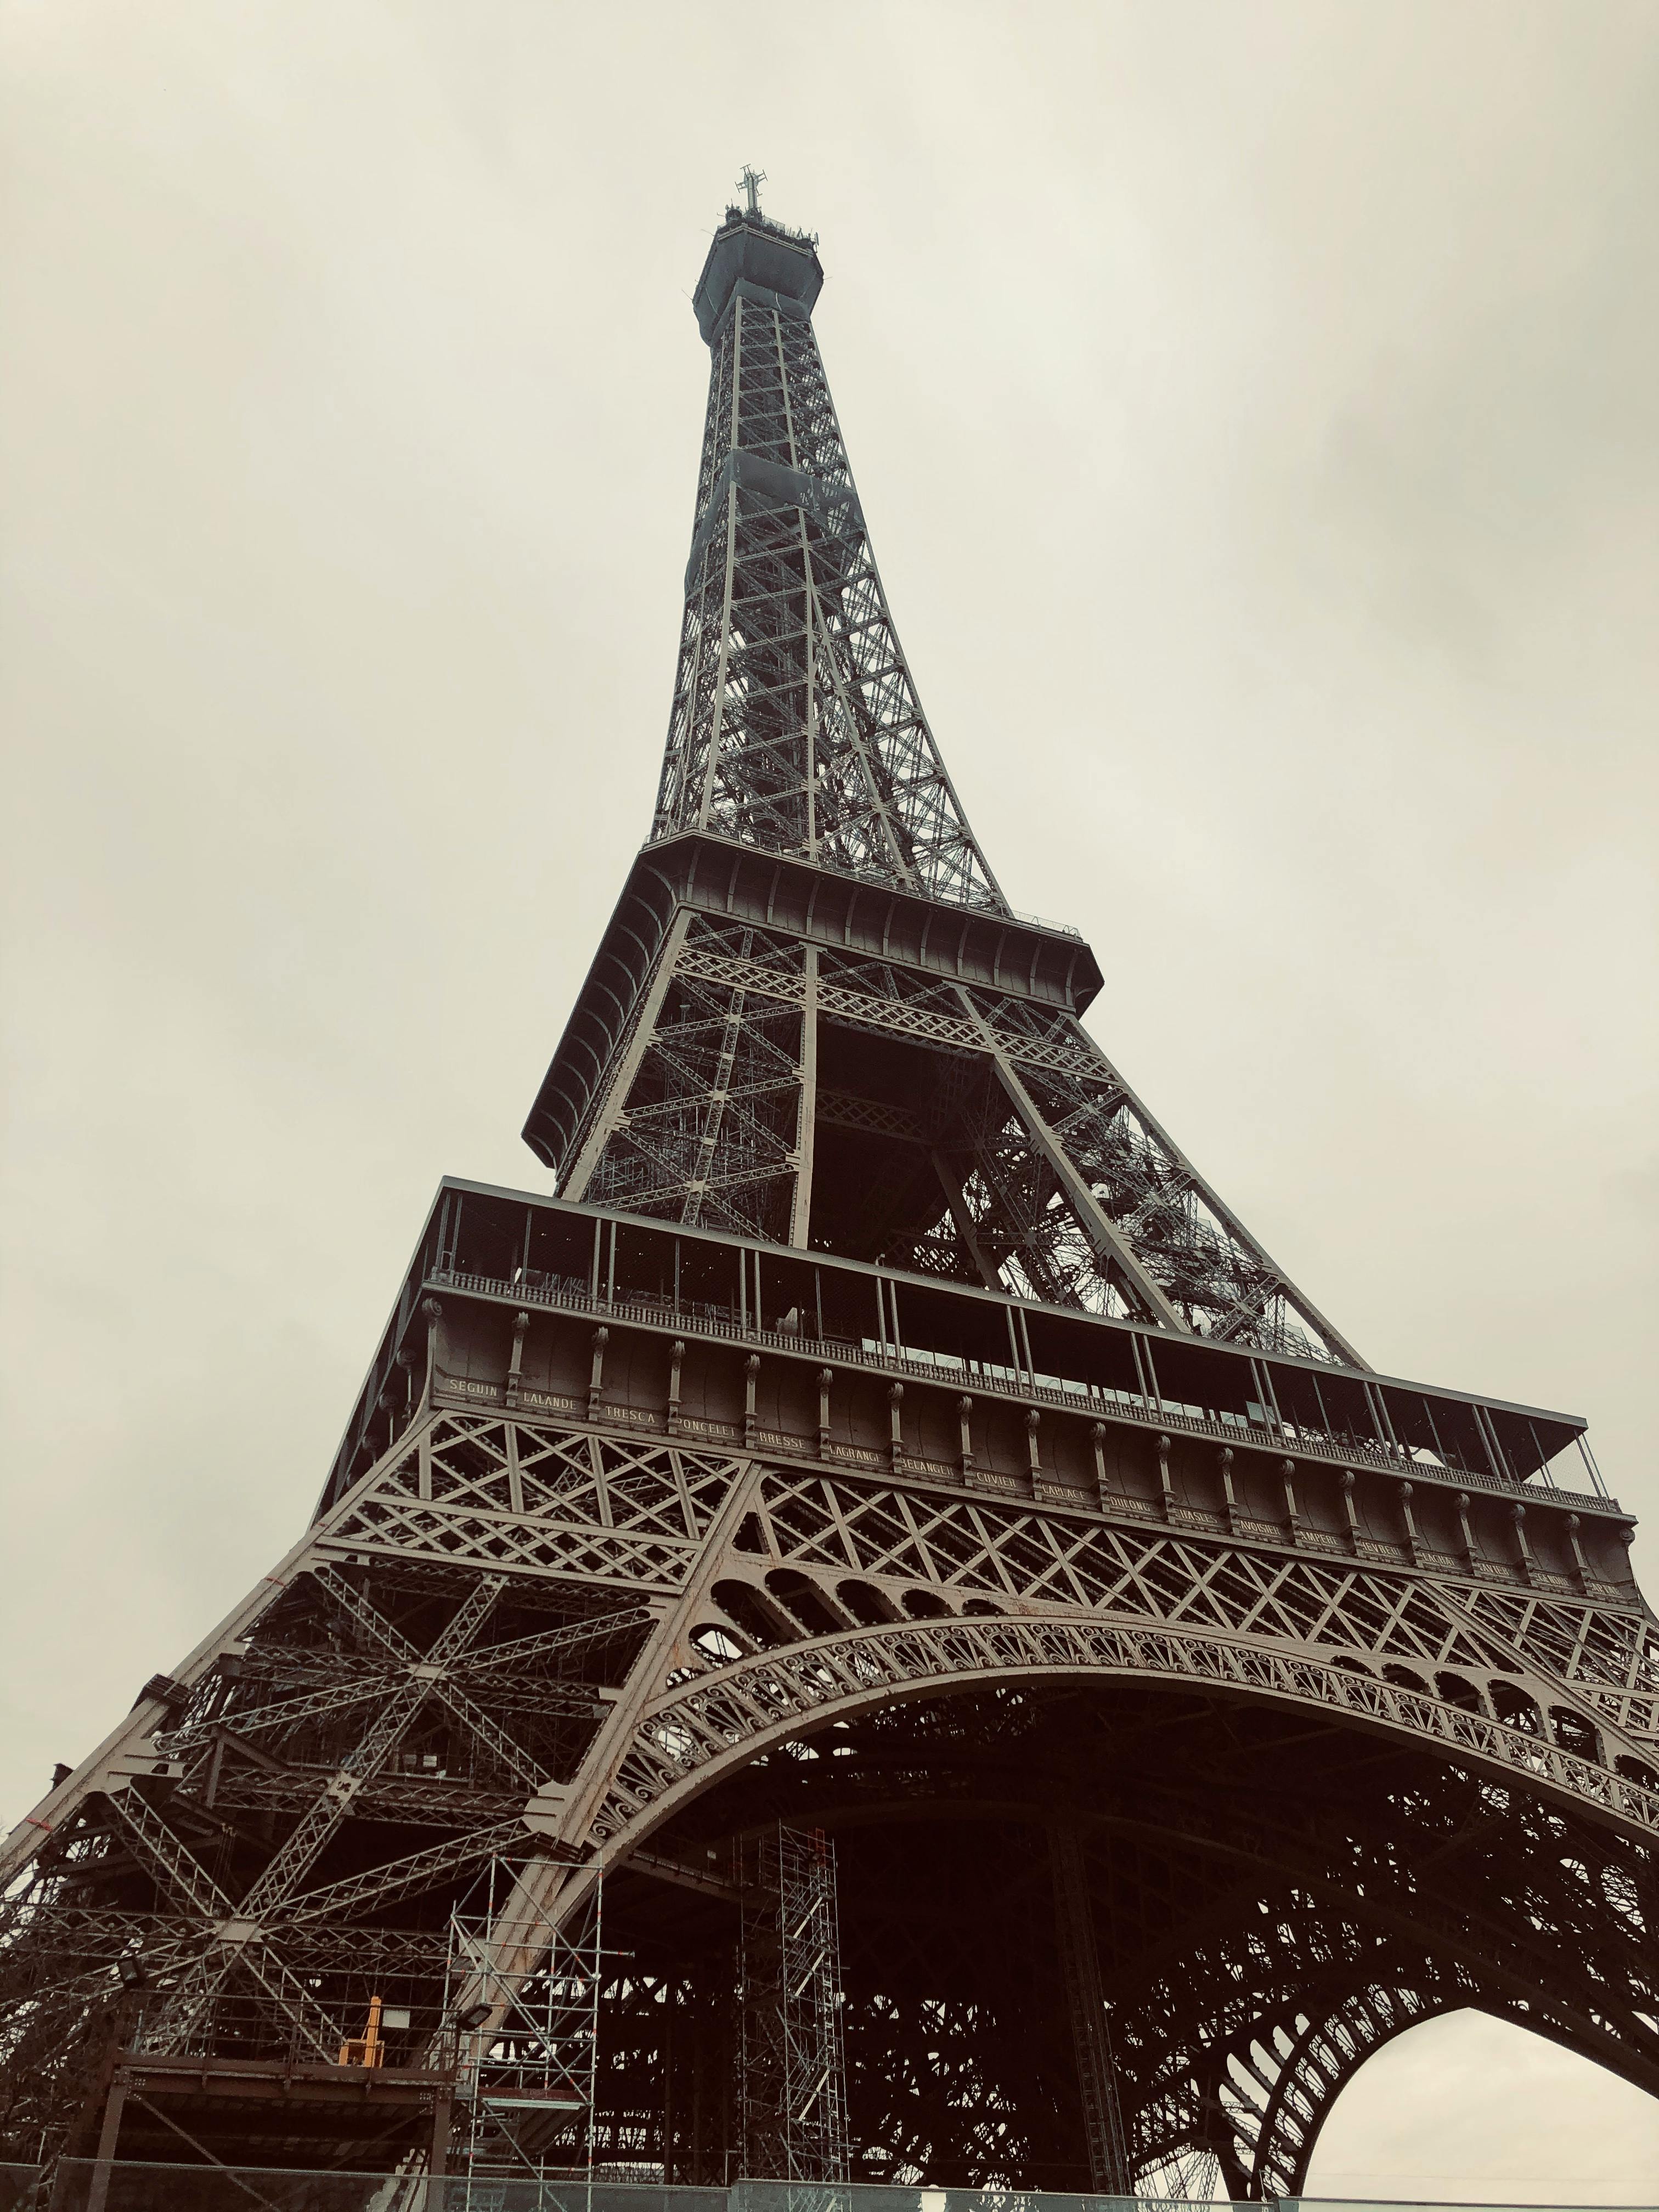 Bức ảnh tháp Eiffel đen trắng sẽ khiến cho bạn trầm trồ và ngưỡng mộ. Với phong cách tối giản, chủ đề toàn bộ là sắc màu đen trắng, bức ảnh sẽ giúp bạn thấy rõ hơn độ phức tạp và vẻ đẹp trong kiến trúc đỉnh cao của thành phố Paris.